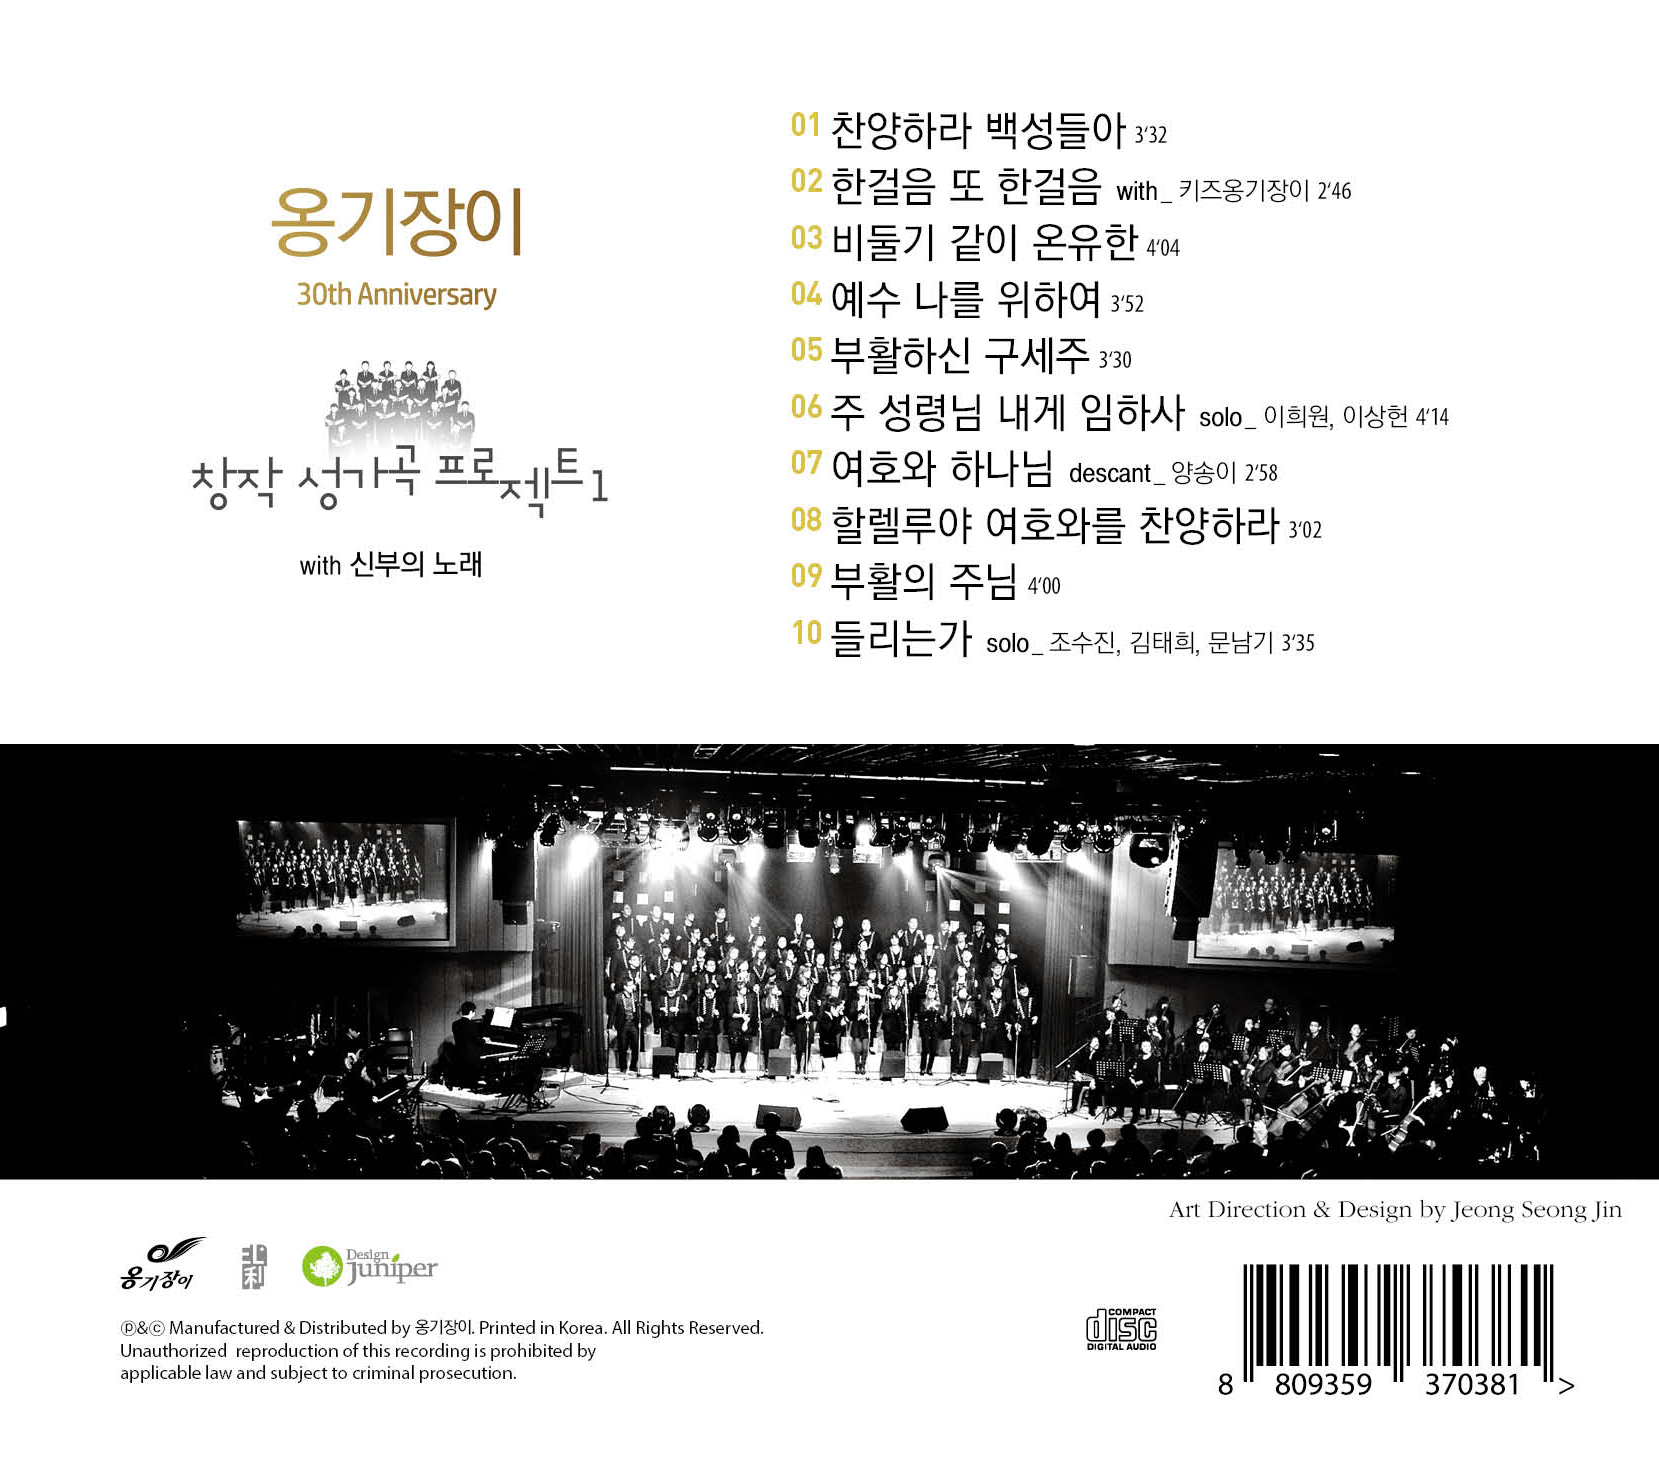 옹기장이 30th Anniversary 창작 성가곡 프로젝트 1 (CD) with 신부의 노래